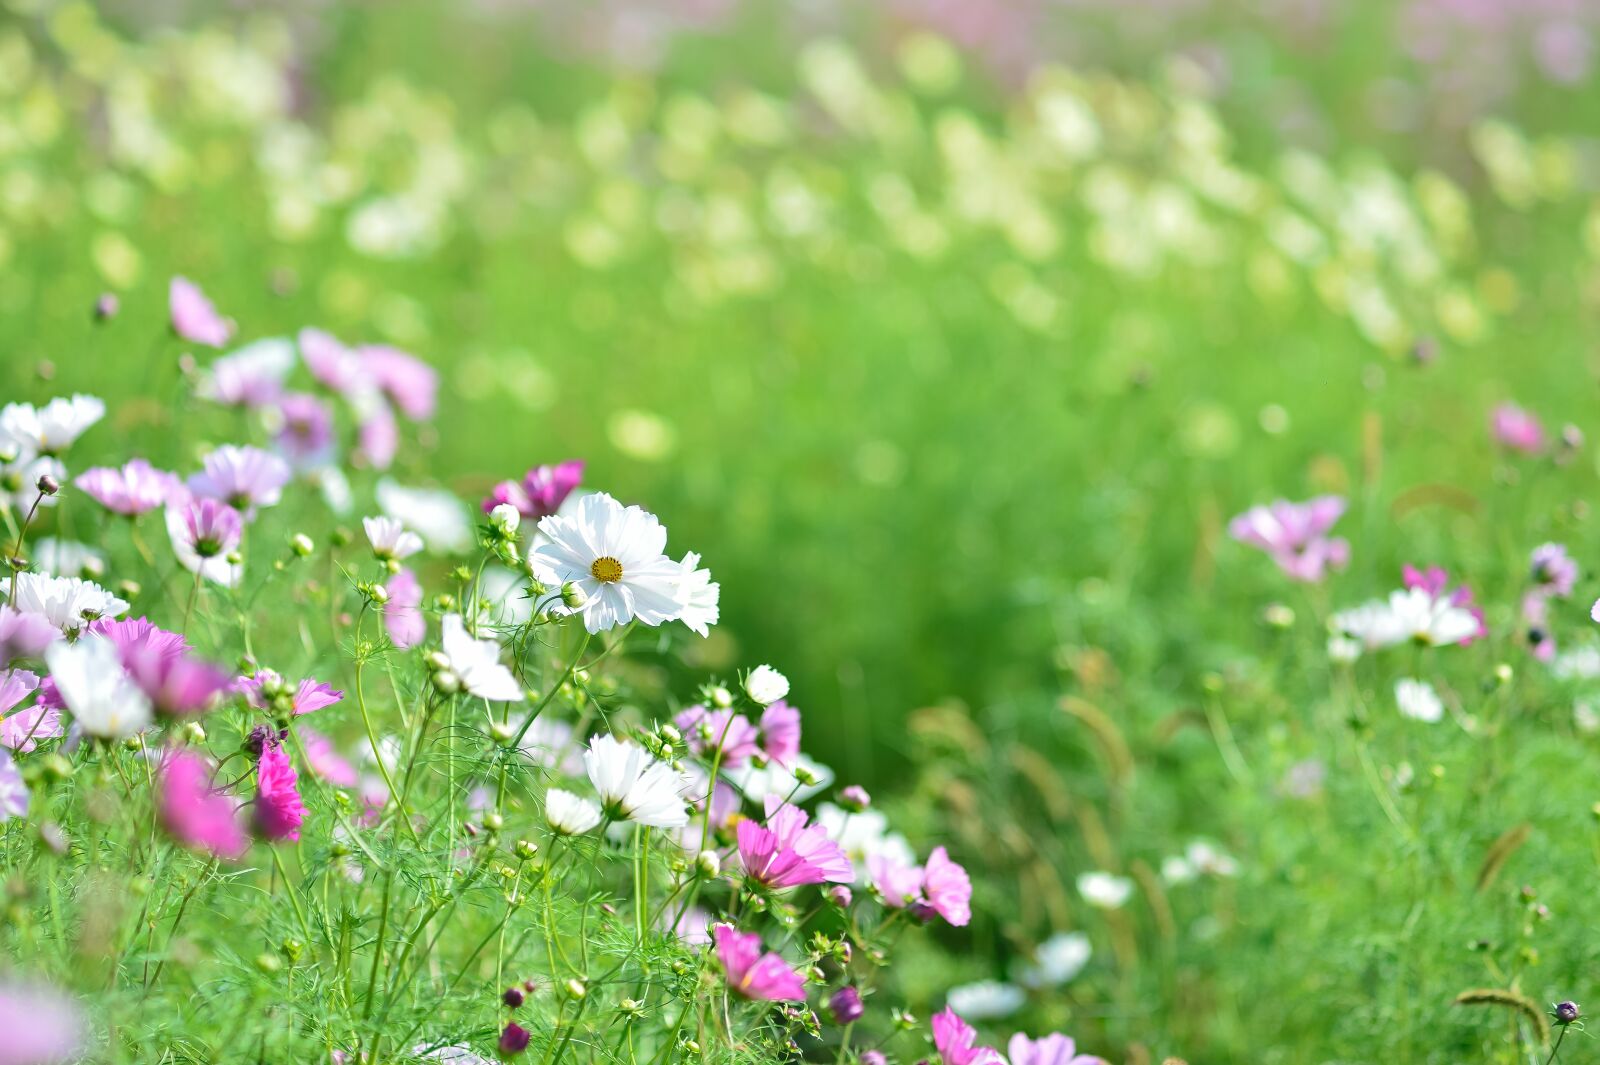 Nikon Df sample photo. Landscape, plant, flowers photography